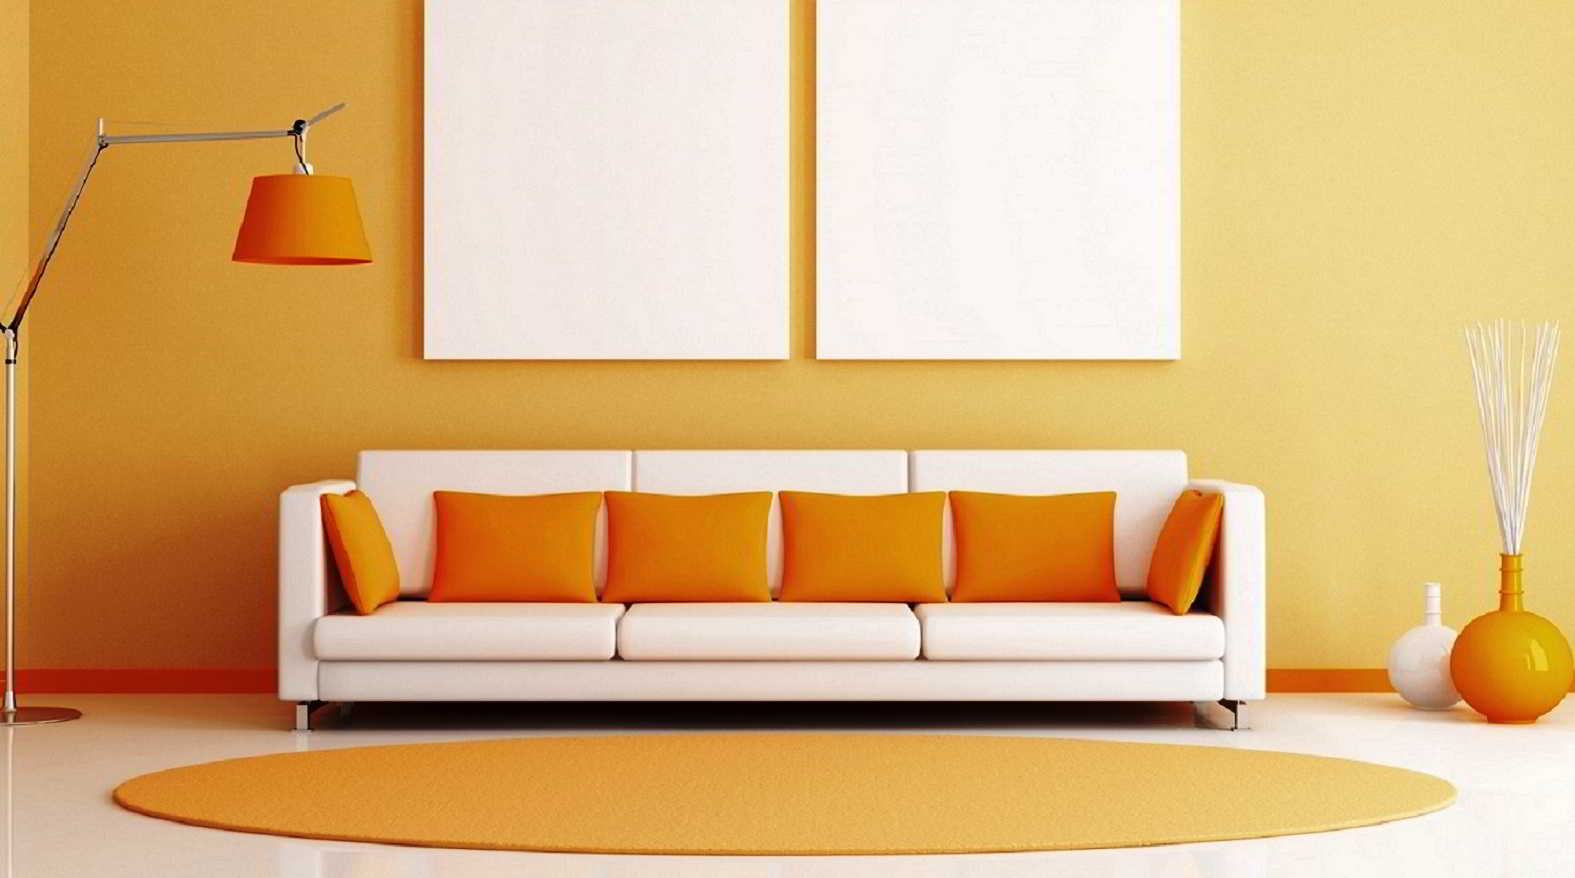  Model  Sofa Ruang  Tv Minimalis  Desain Rumah